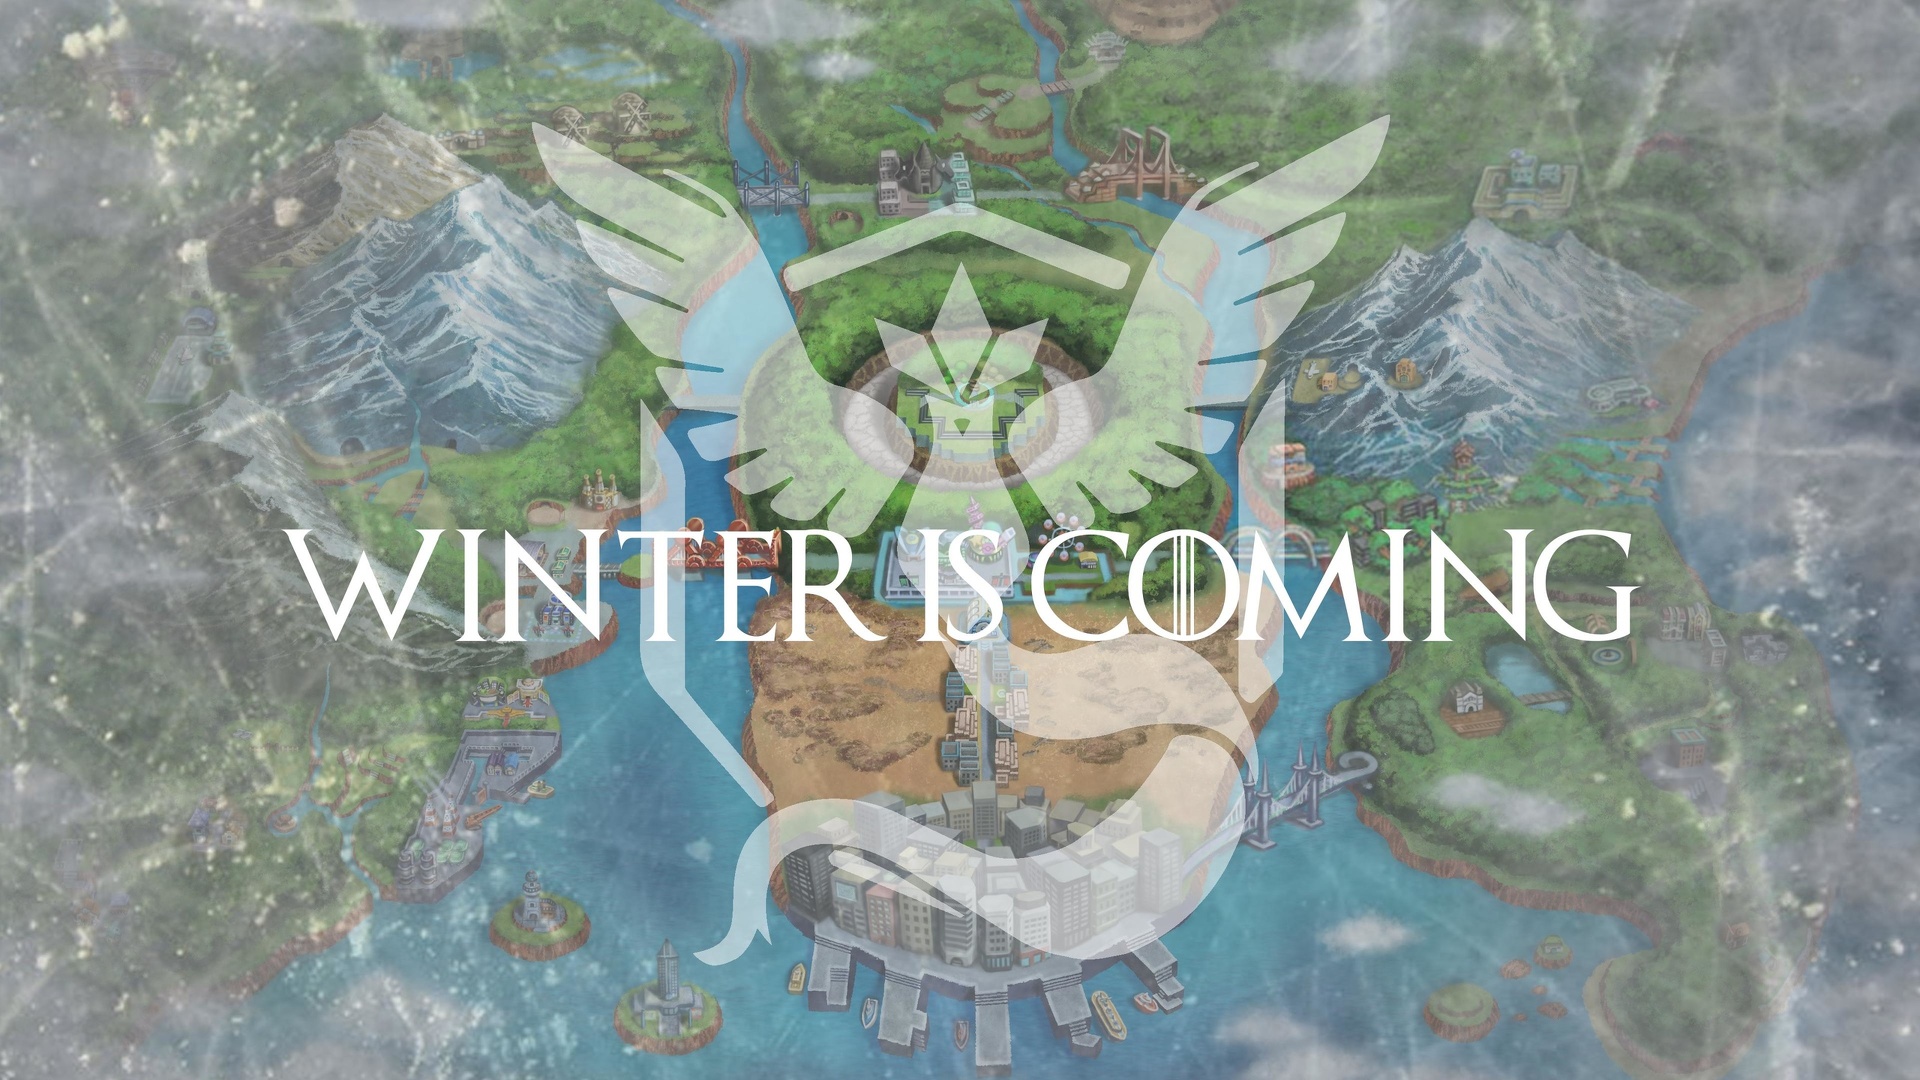 Game of thrones - Winter is goming.jpg